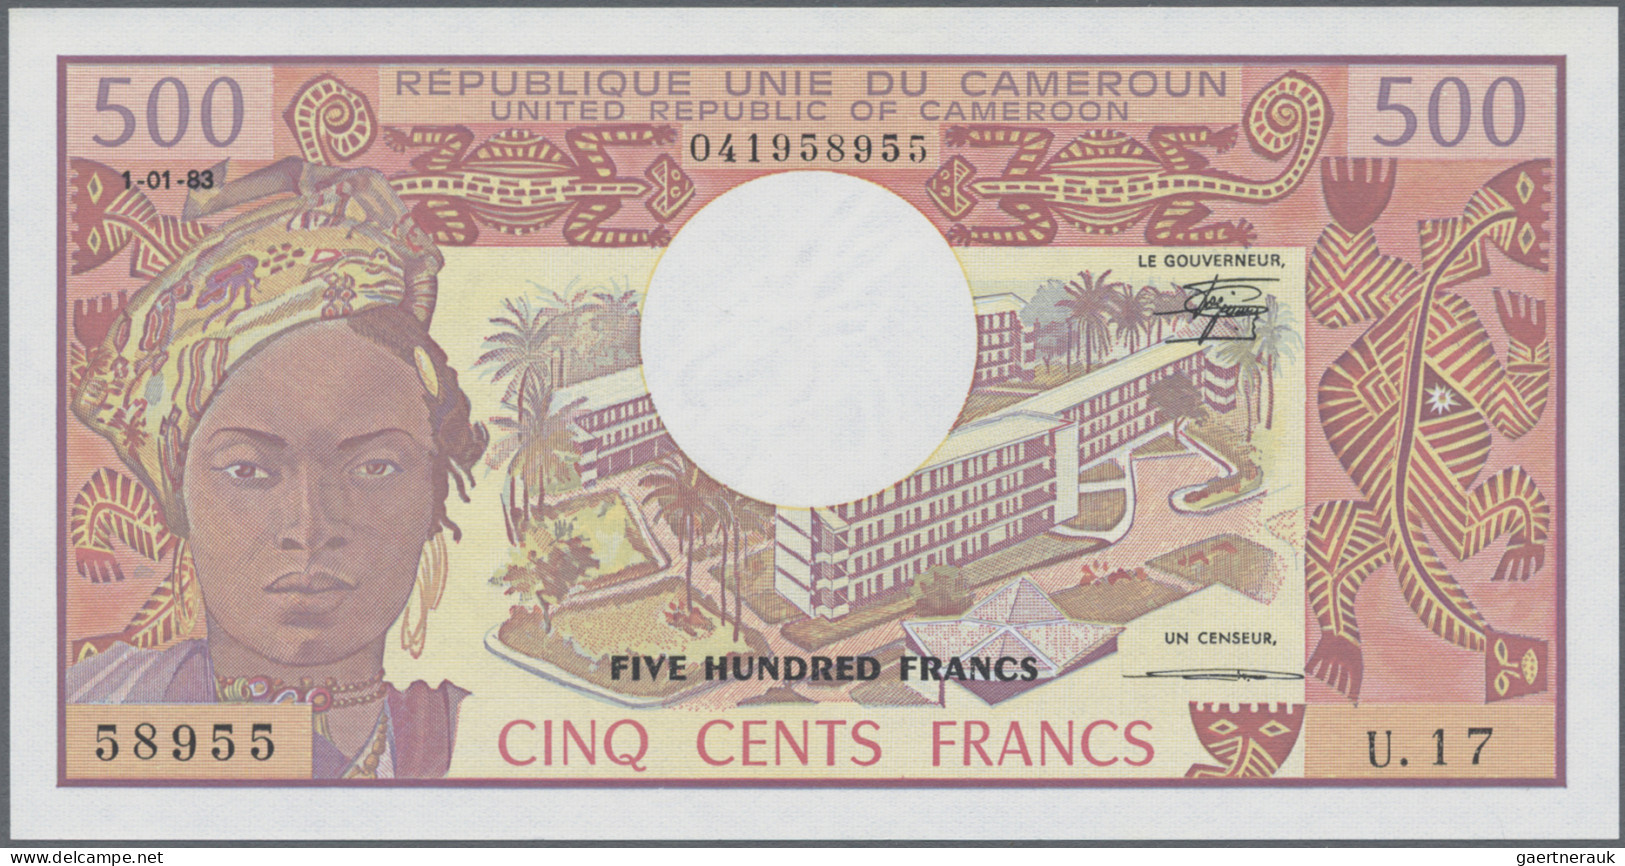 Cameroon: Banque Des États De L'Afrique Centrale - République Unie Du Cameroun, - Cameroon